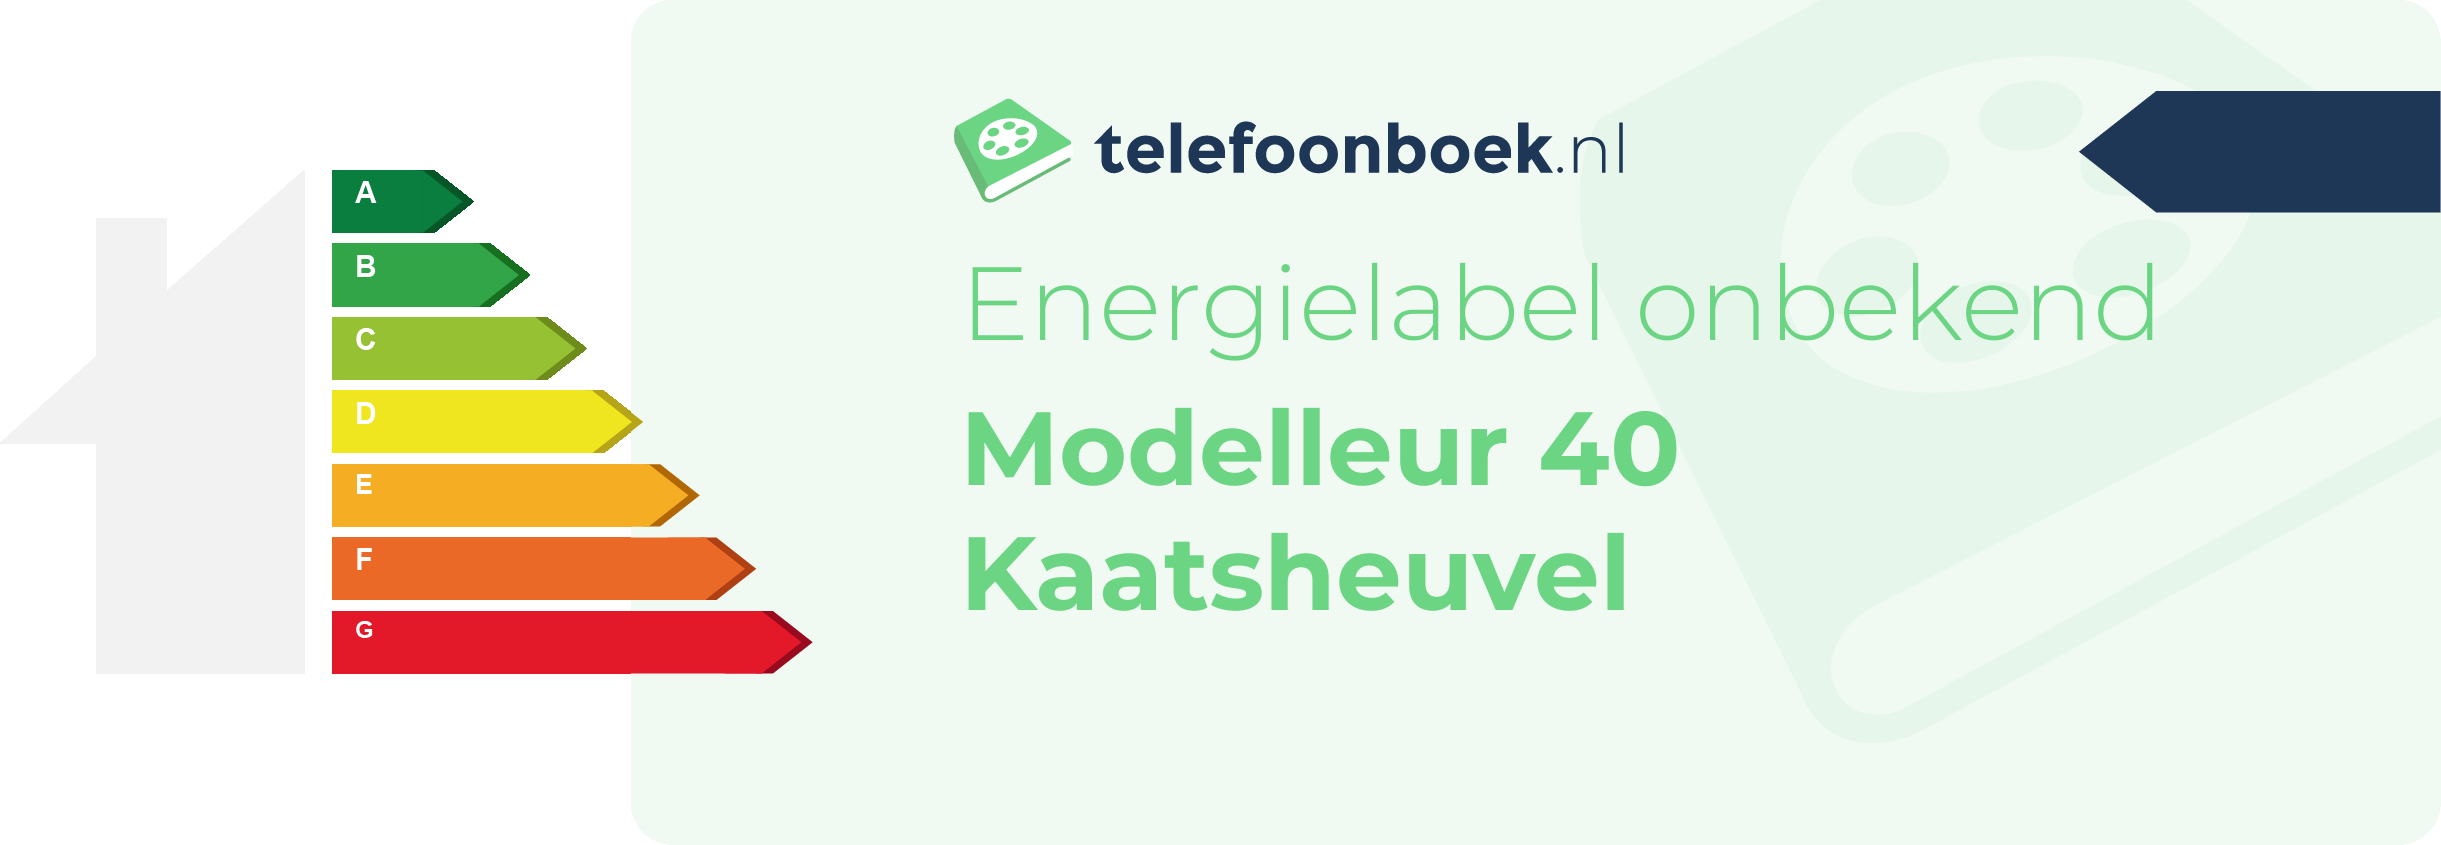 Energielabel Modelleur 40 Kaatsheuvel